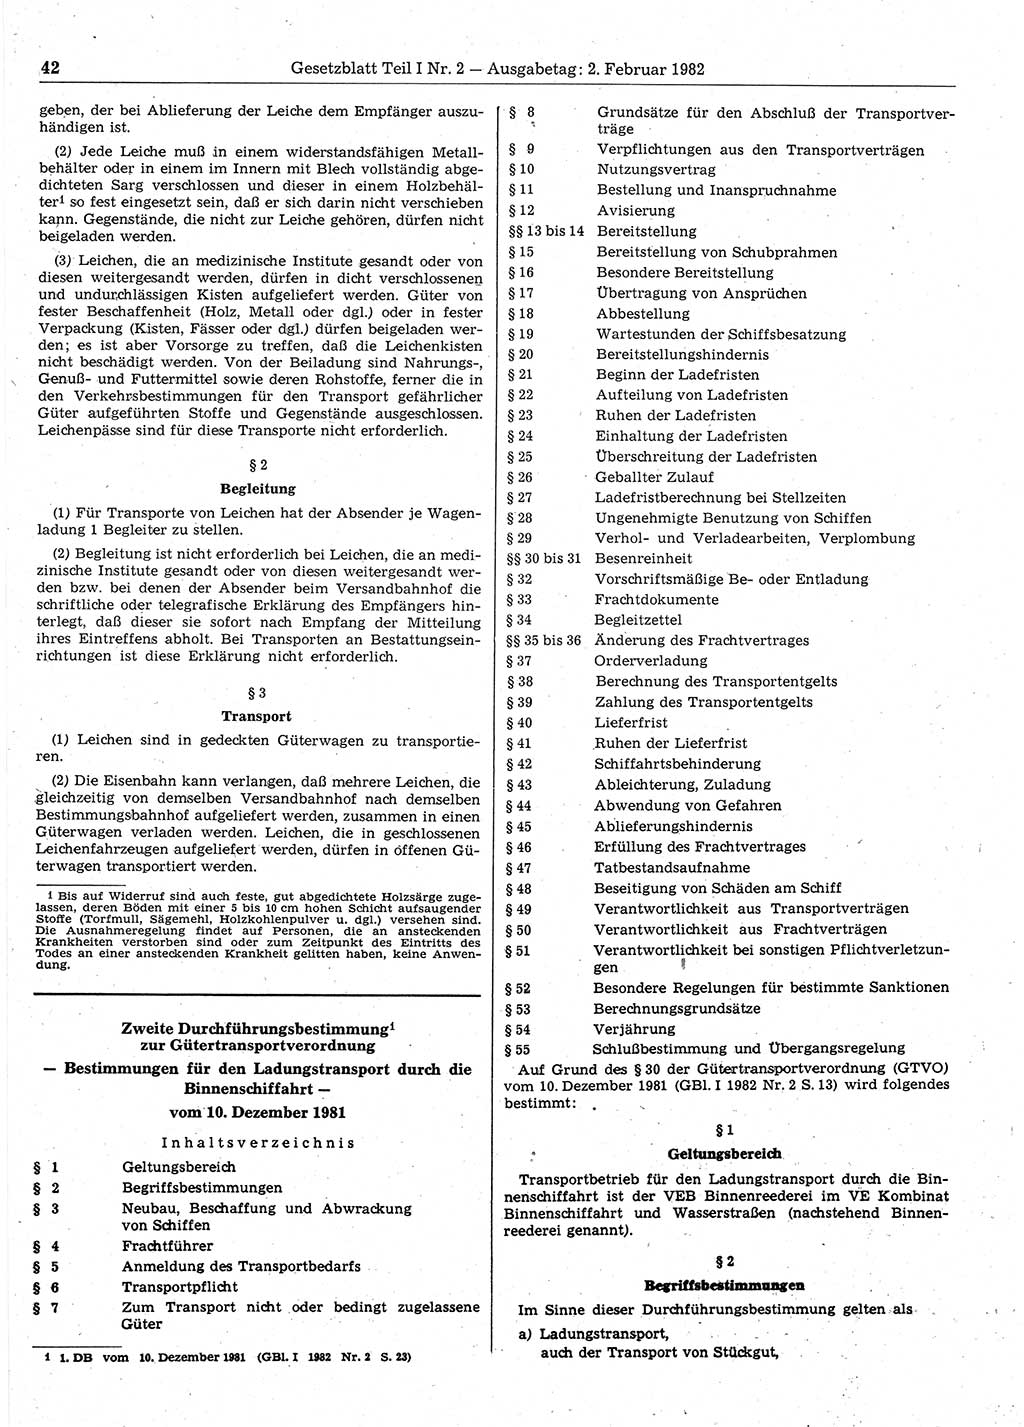 Gesetzblatt (GBl.) der Deutschen Demokratischen Republik (DDR) Teil Ⅰ 1982, Seite 42 (GBl. DDR Ⅰ 1982, S. 42)